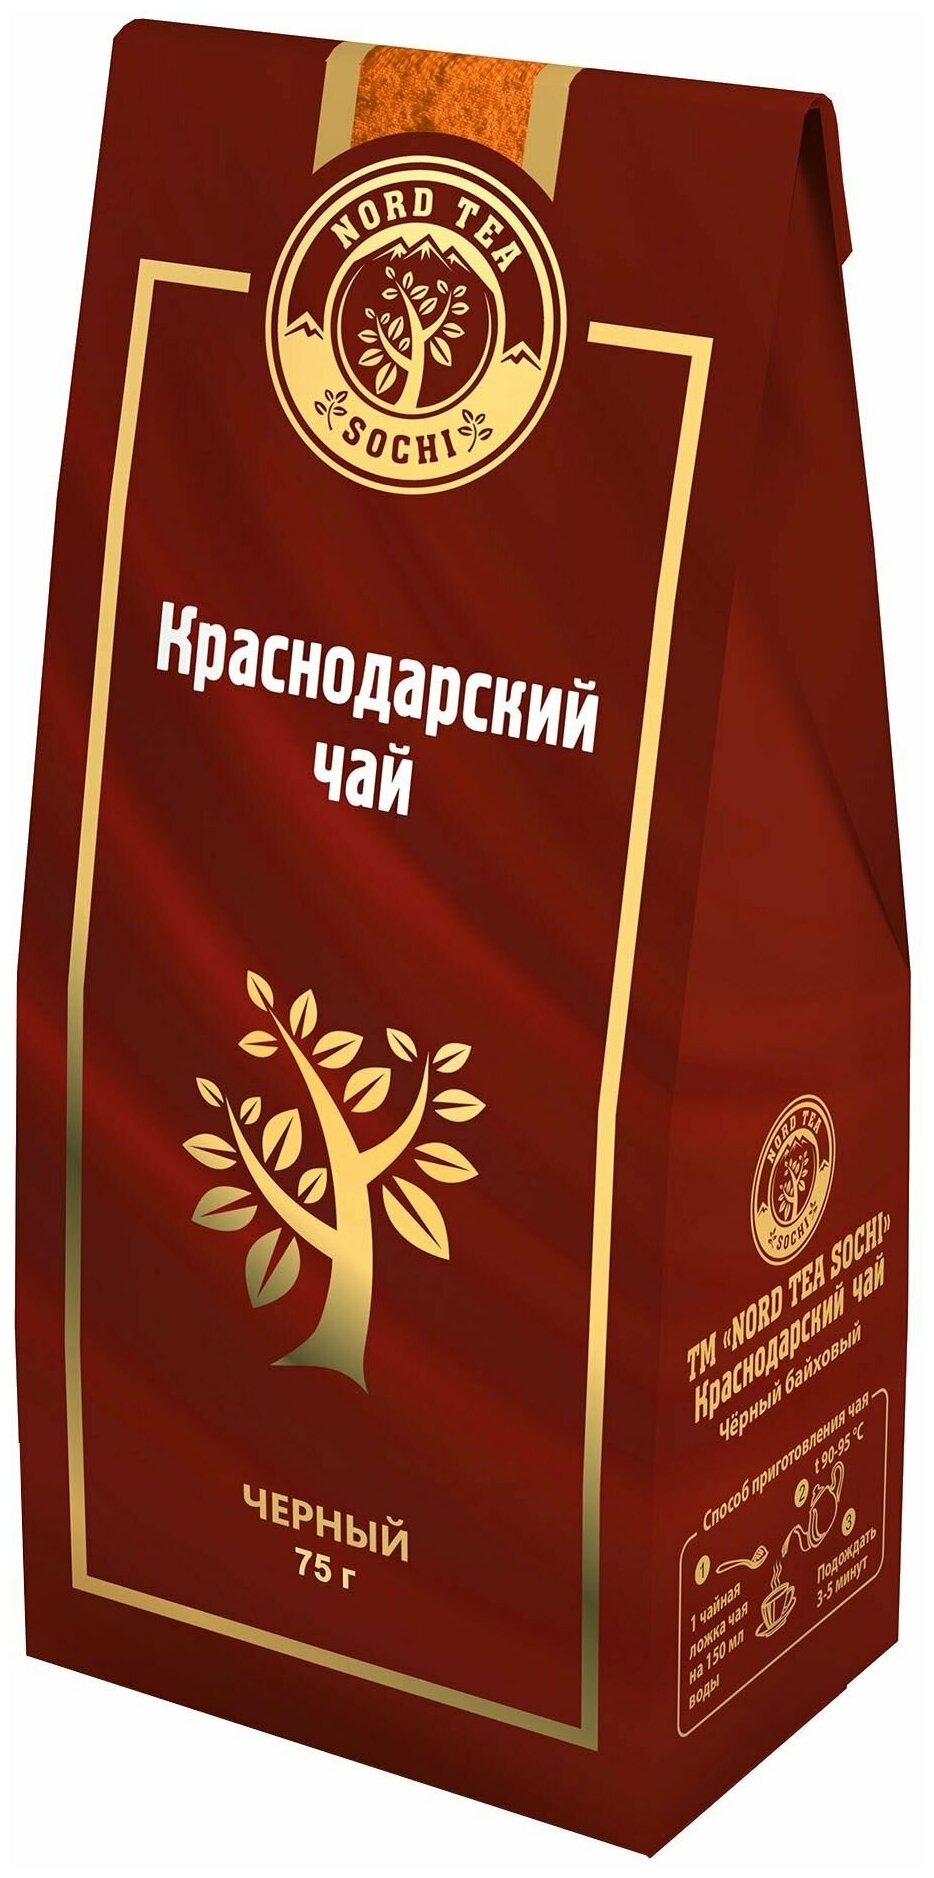 Краснодарский чай Nord Tea Sochi Черный 75г